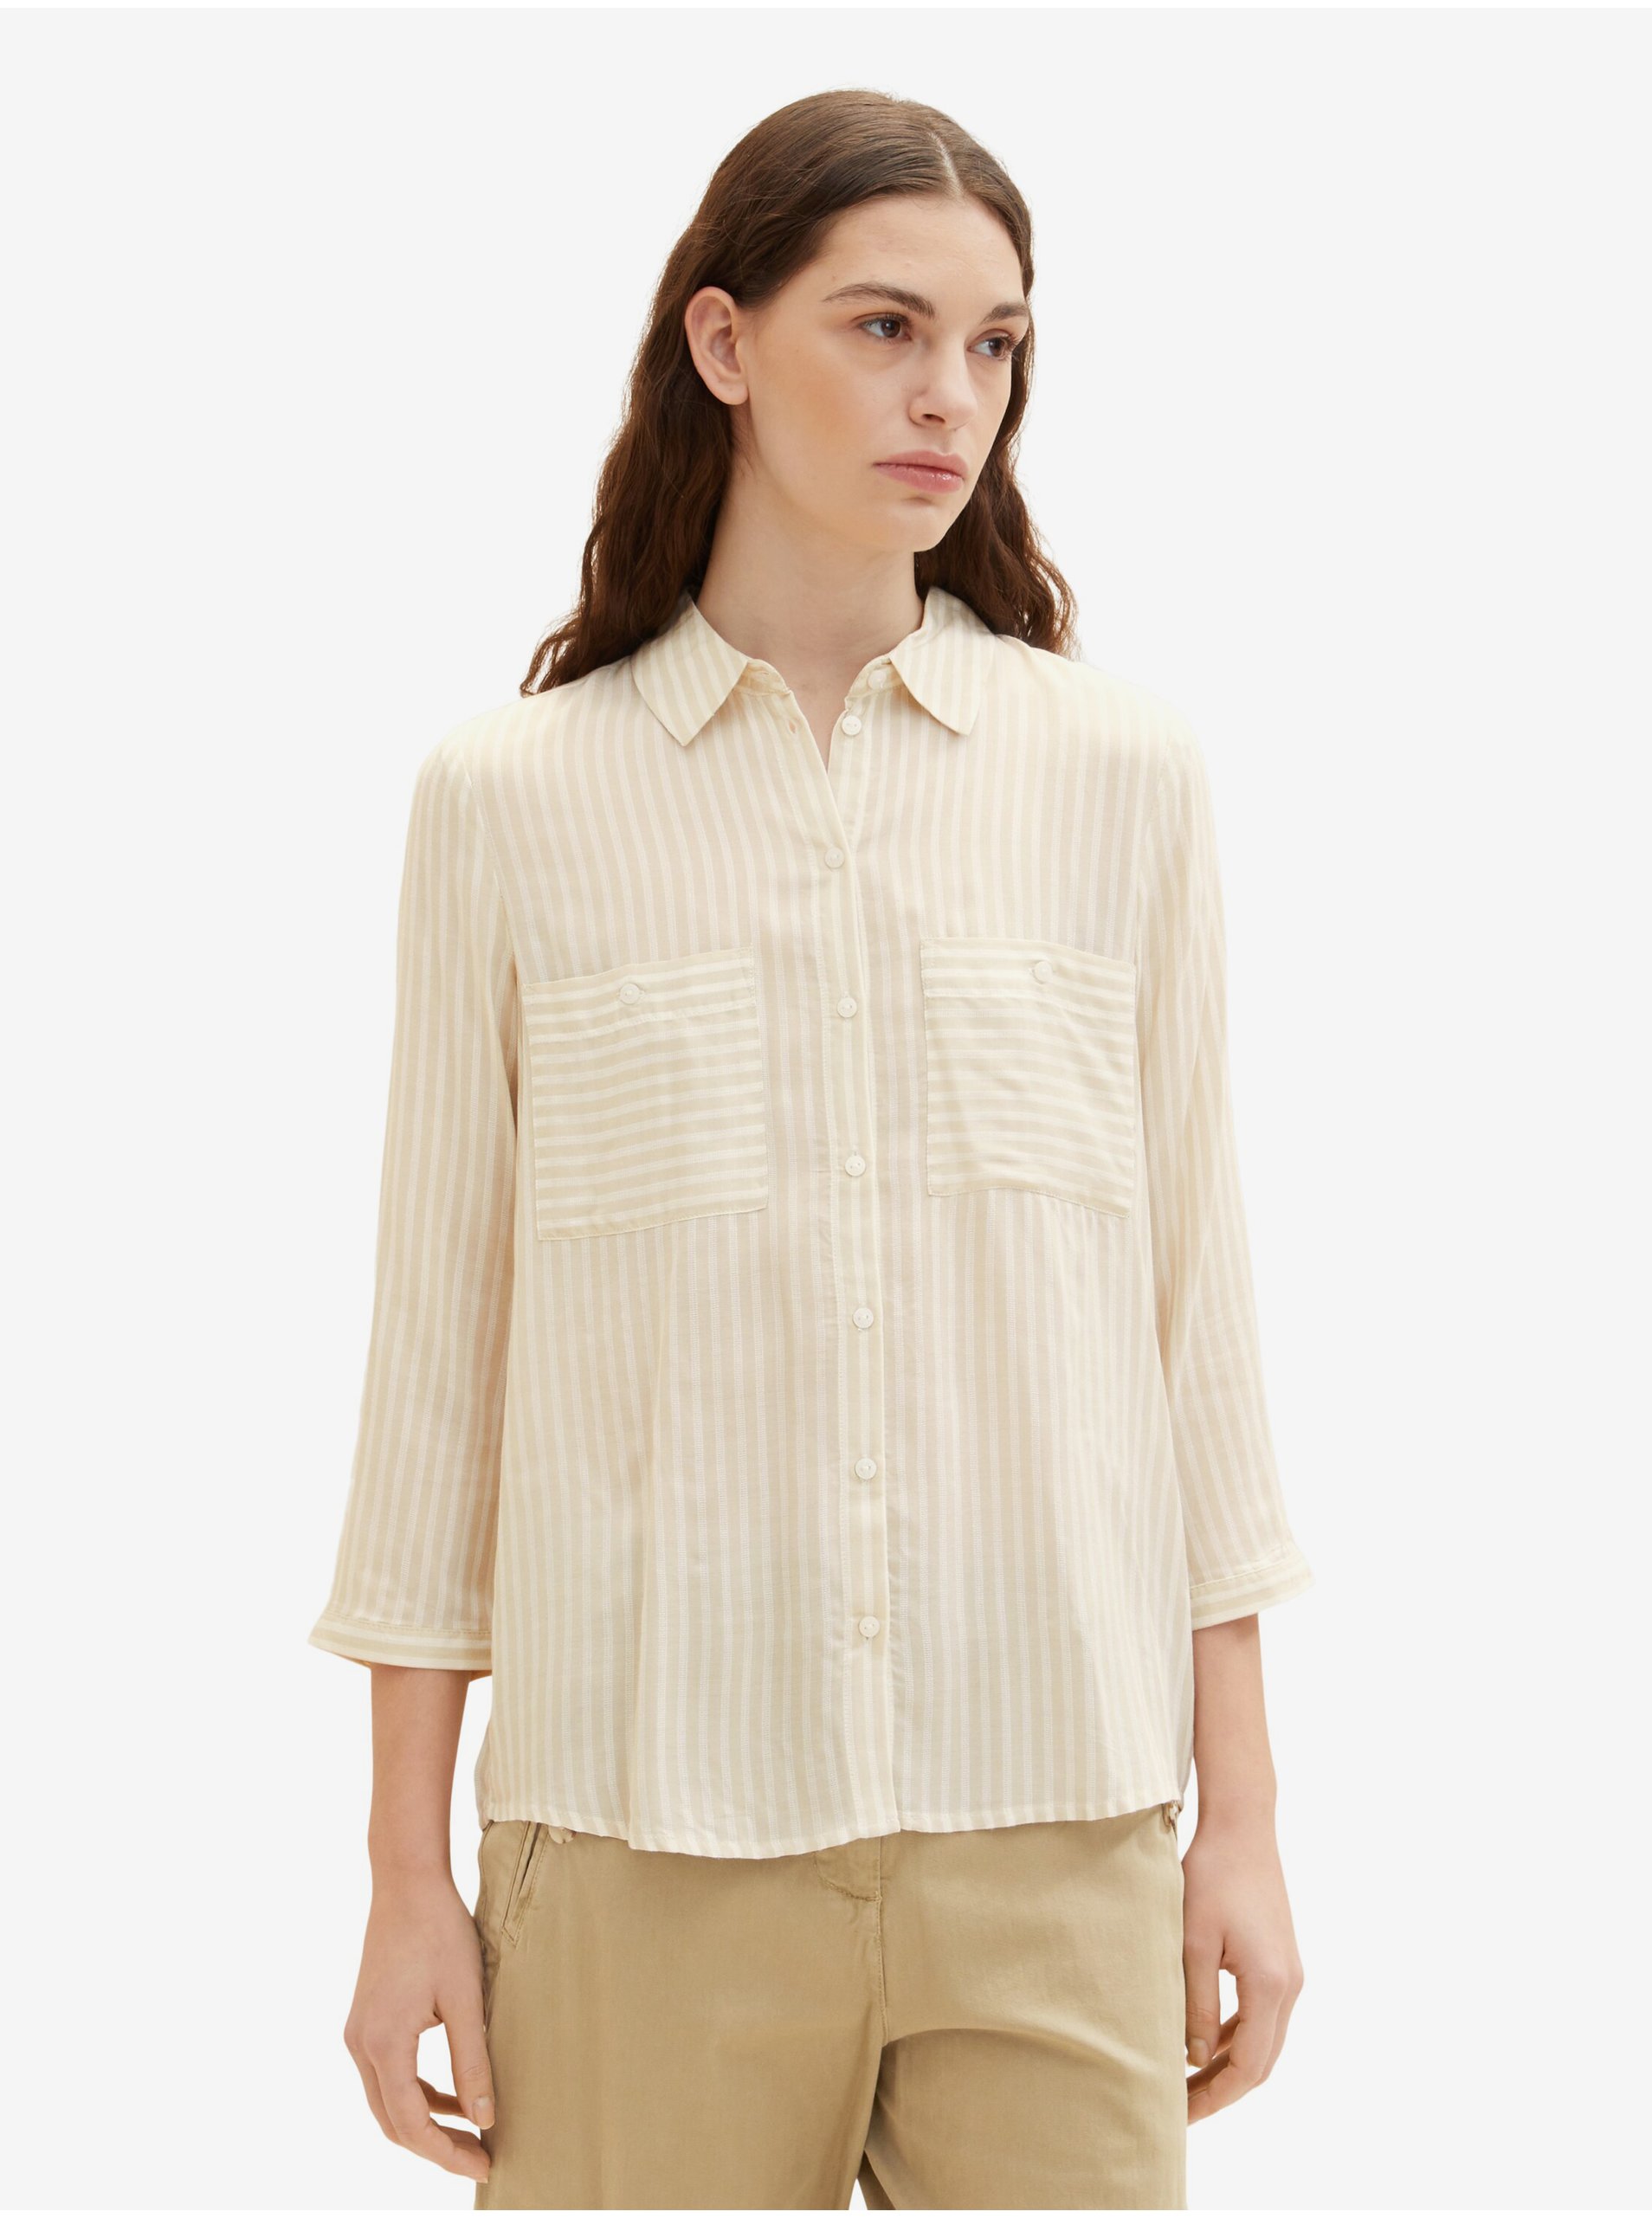 E-shop Béžová dámská pruhovaná košile Tom Tailor